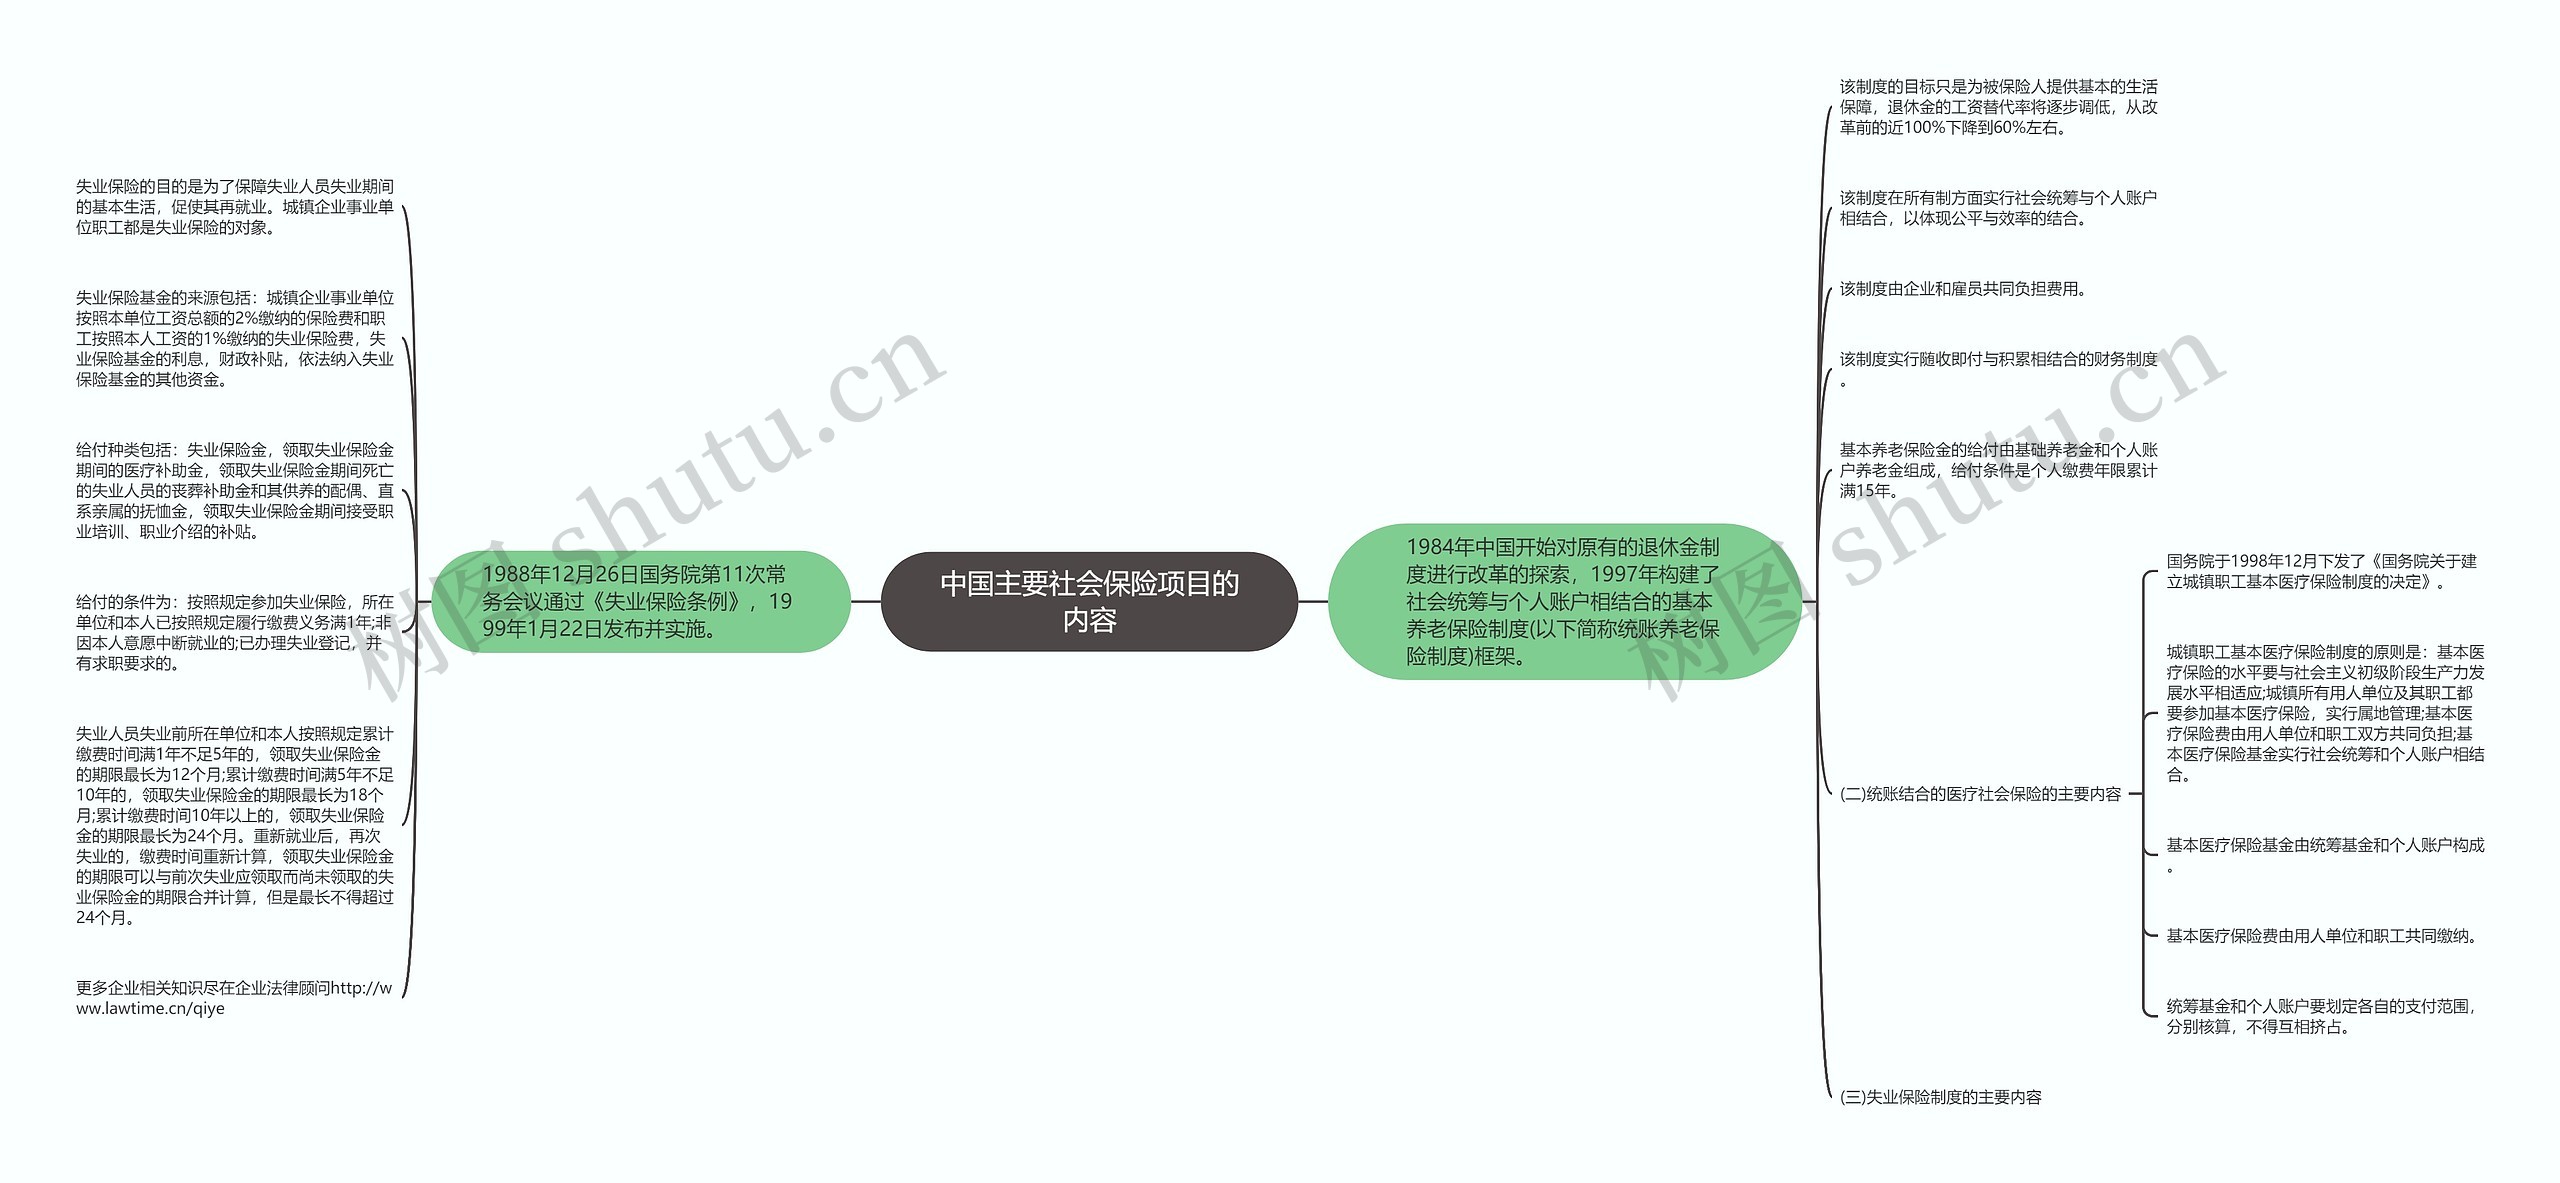 中国主要社会保险项目的内容思维导图